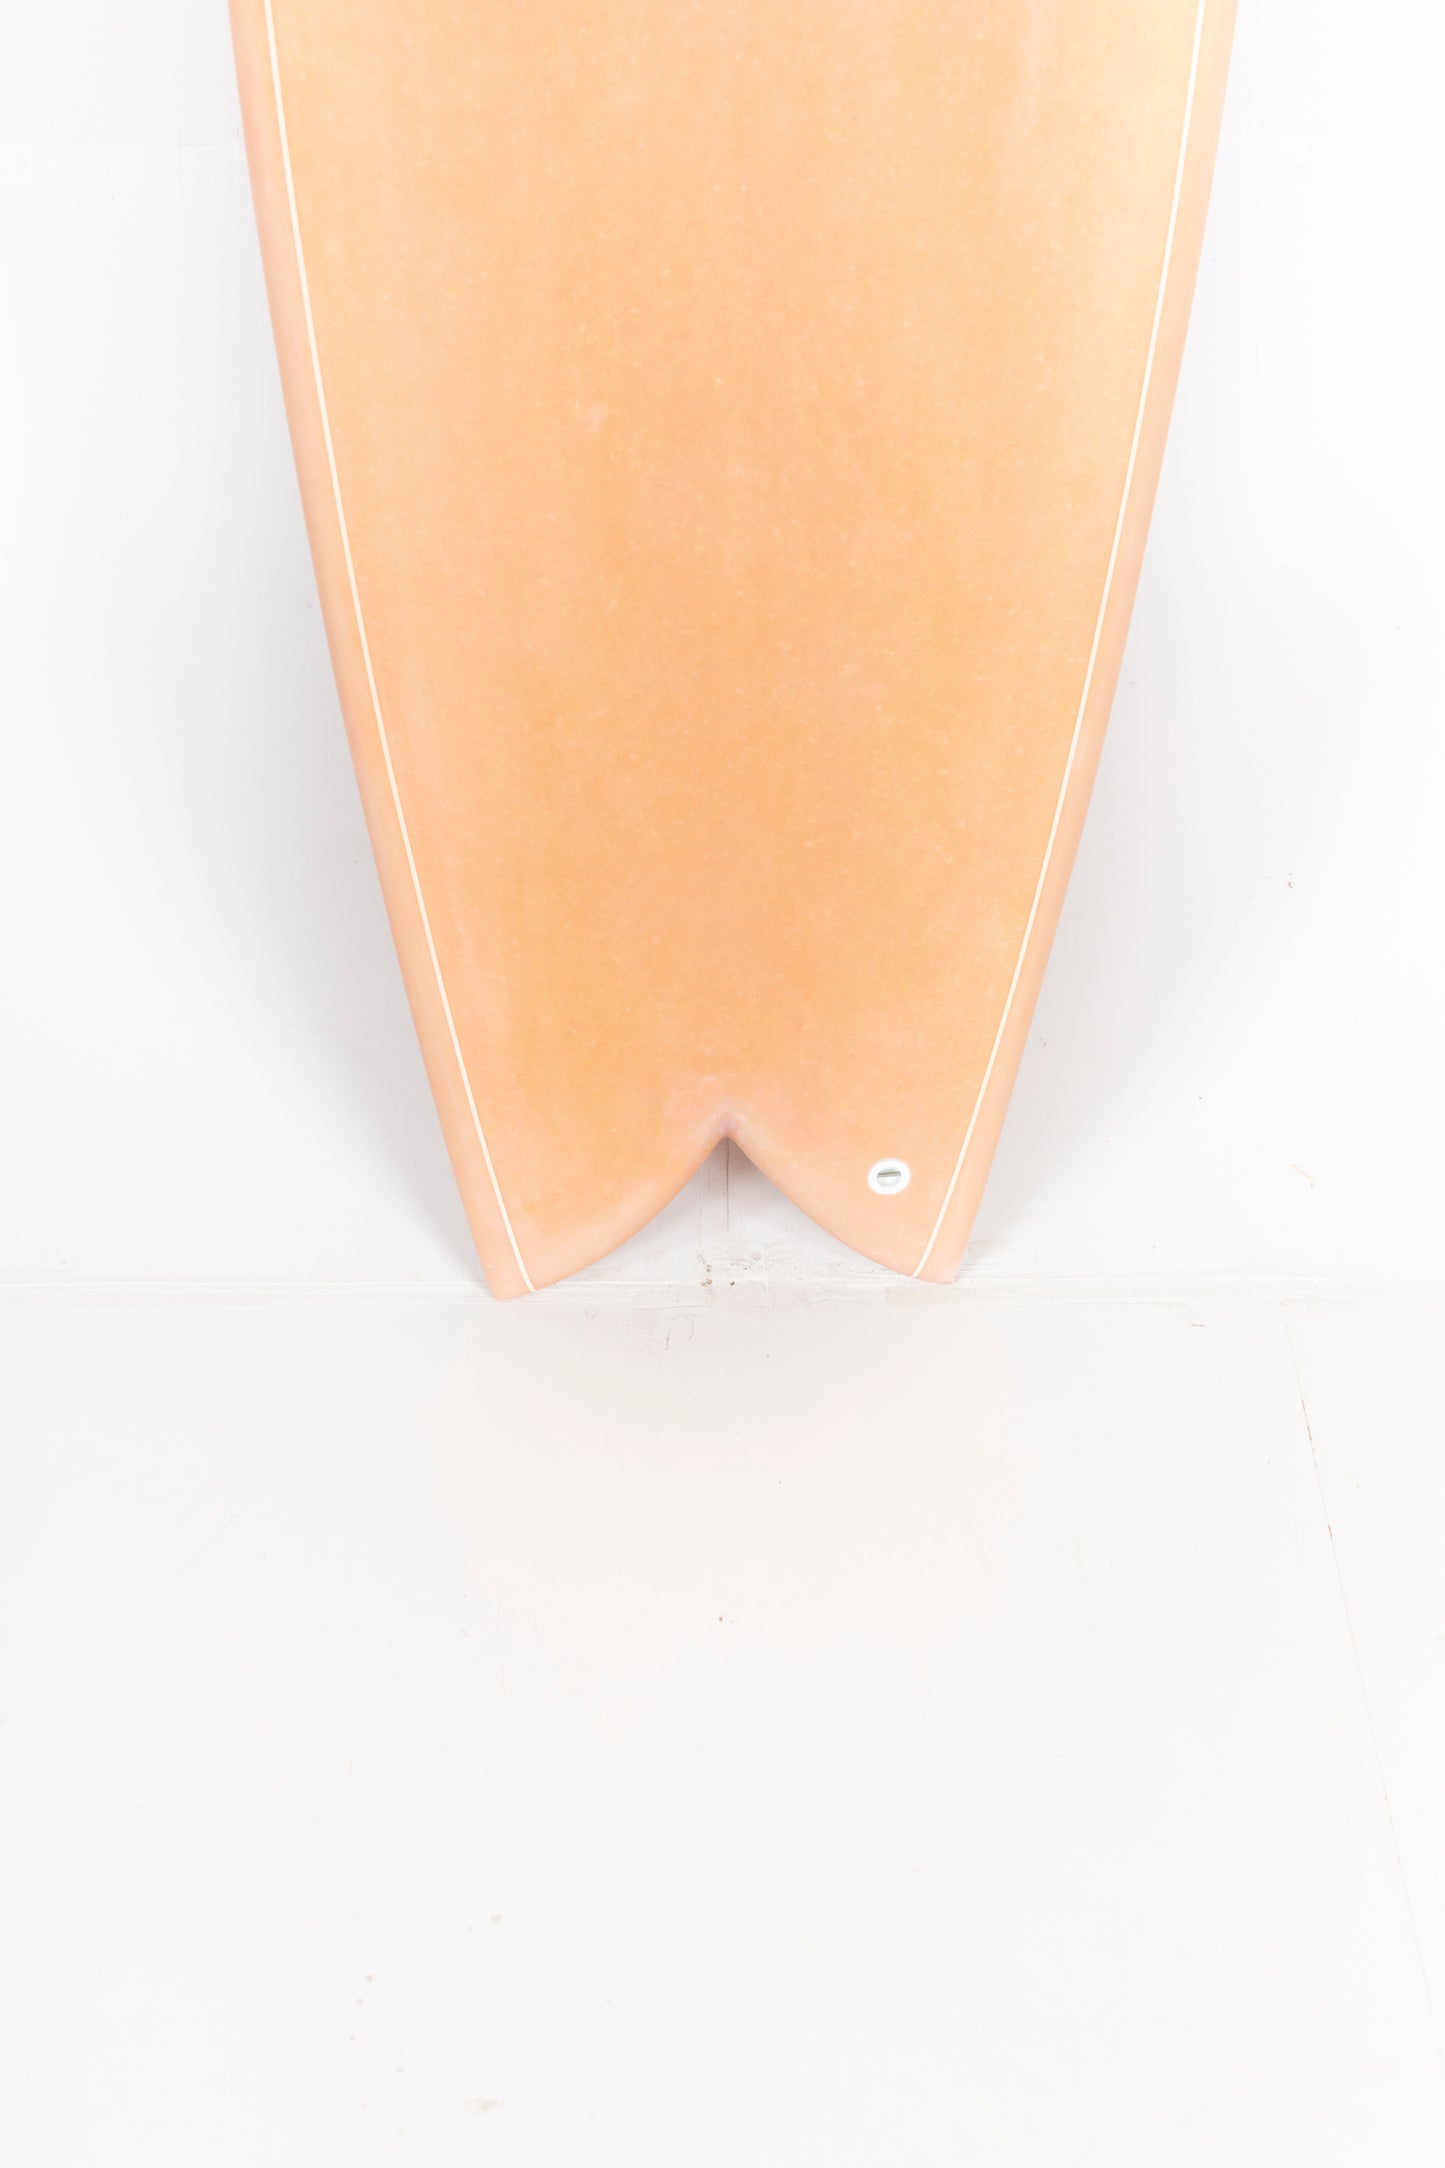 Indio Surfboard - DAB - 5'11” x 21 1/4 x 2 5/8 x 39.9L. – PUKAS 